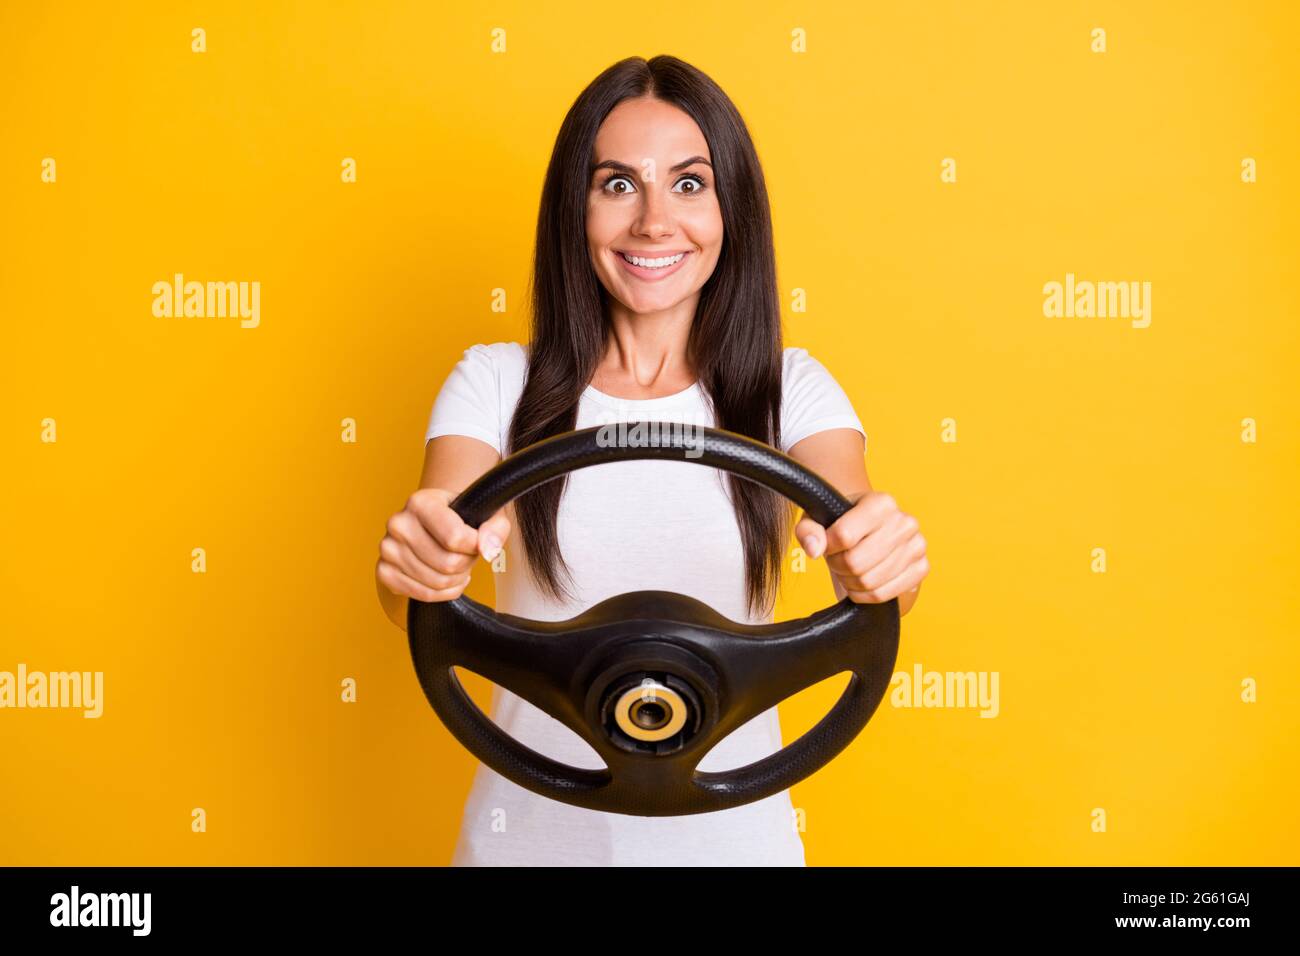 Portrait Foto verrückt Brünette halten Lenkrad üben Fahrer Lektion isoliert auf hellen gelben Hintergrund Stockfoto